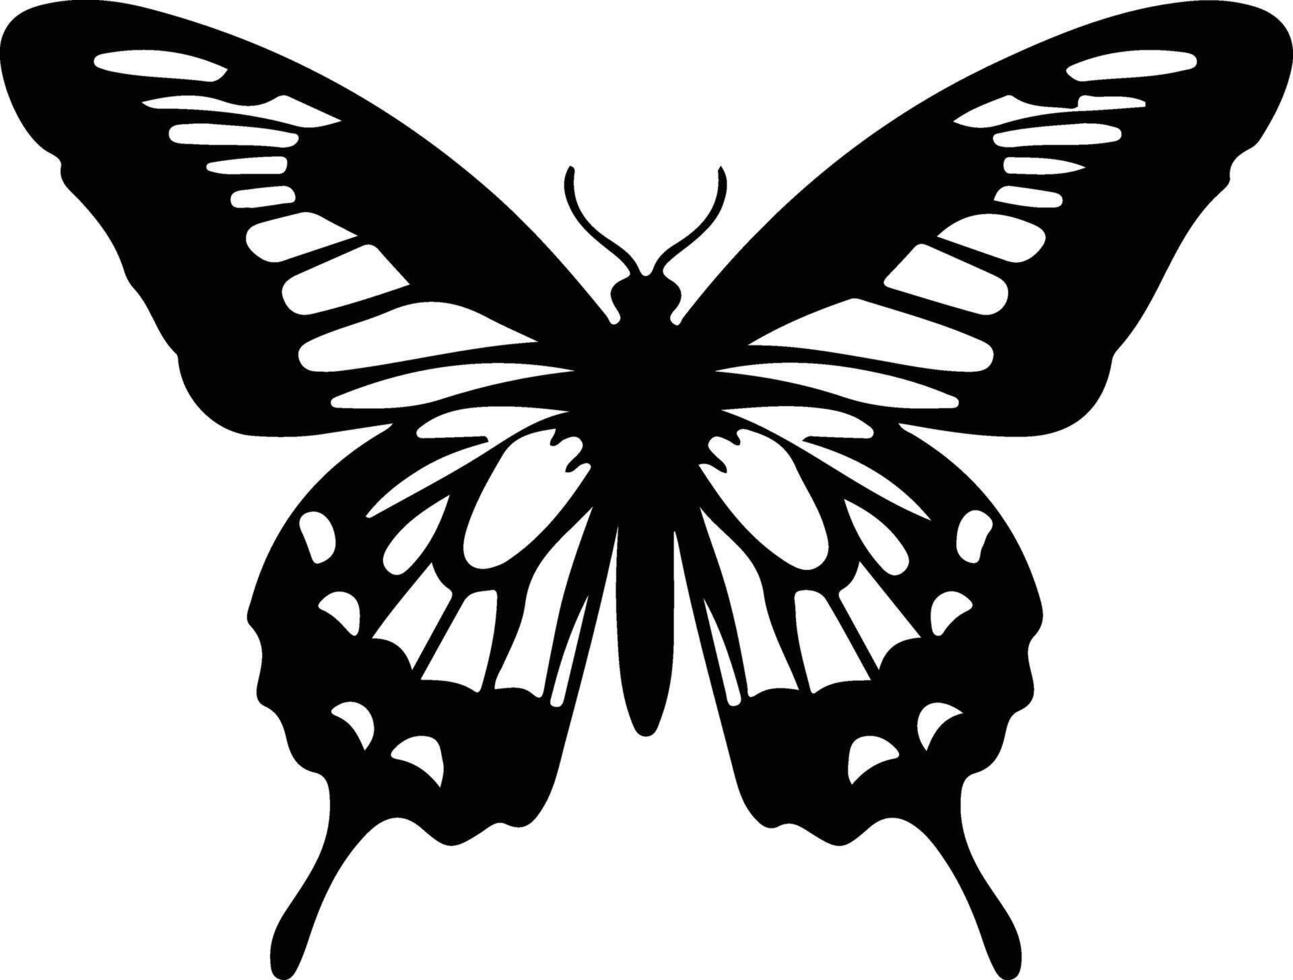 Zebra Schwalbenschwanz Schmetterling schwarz Silhouette vektor